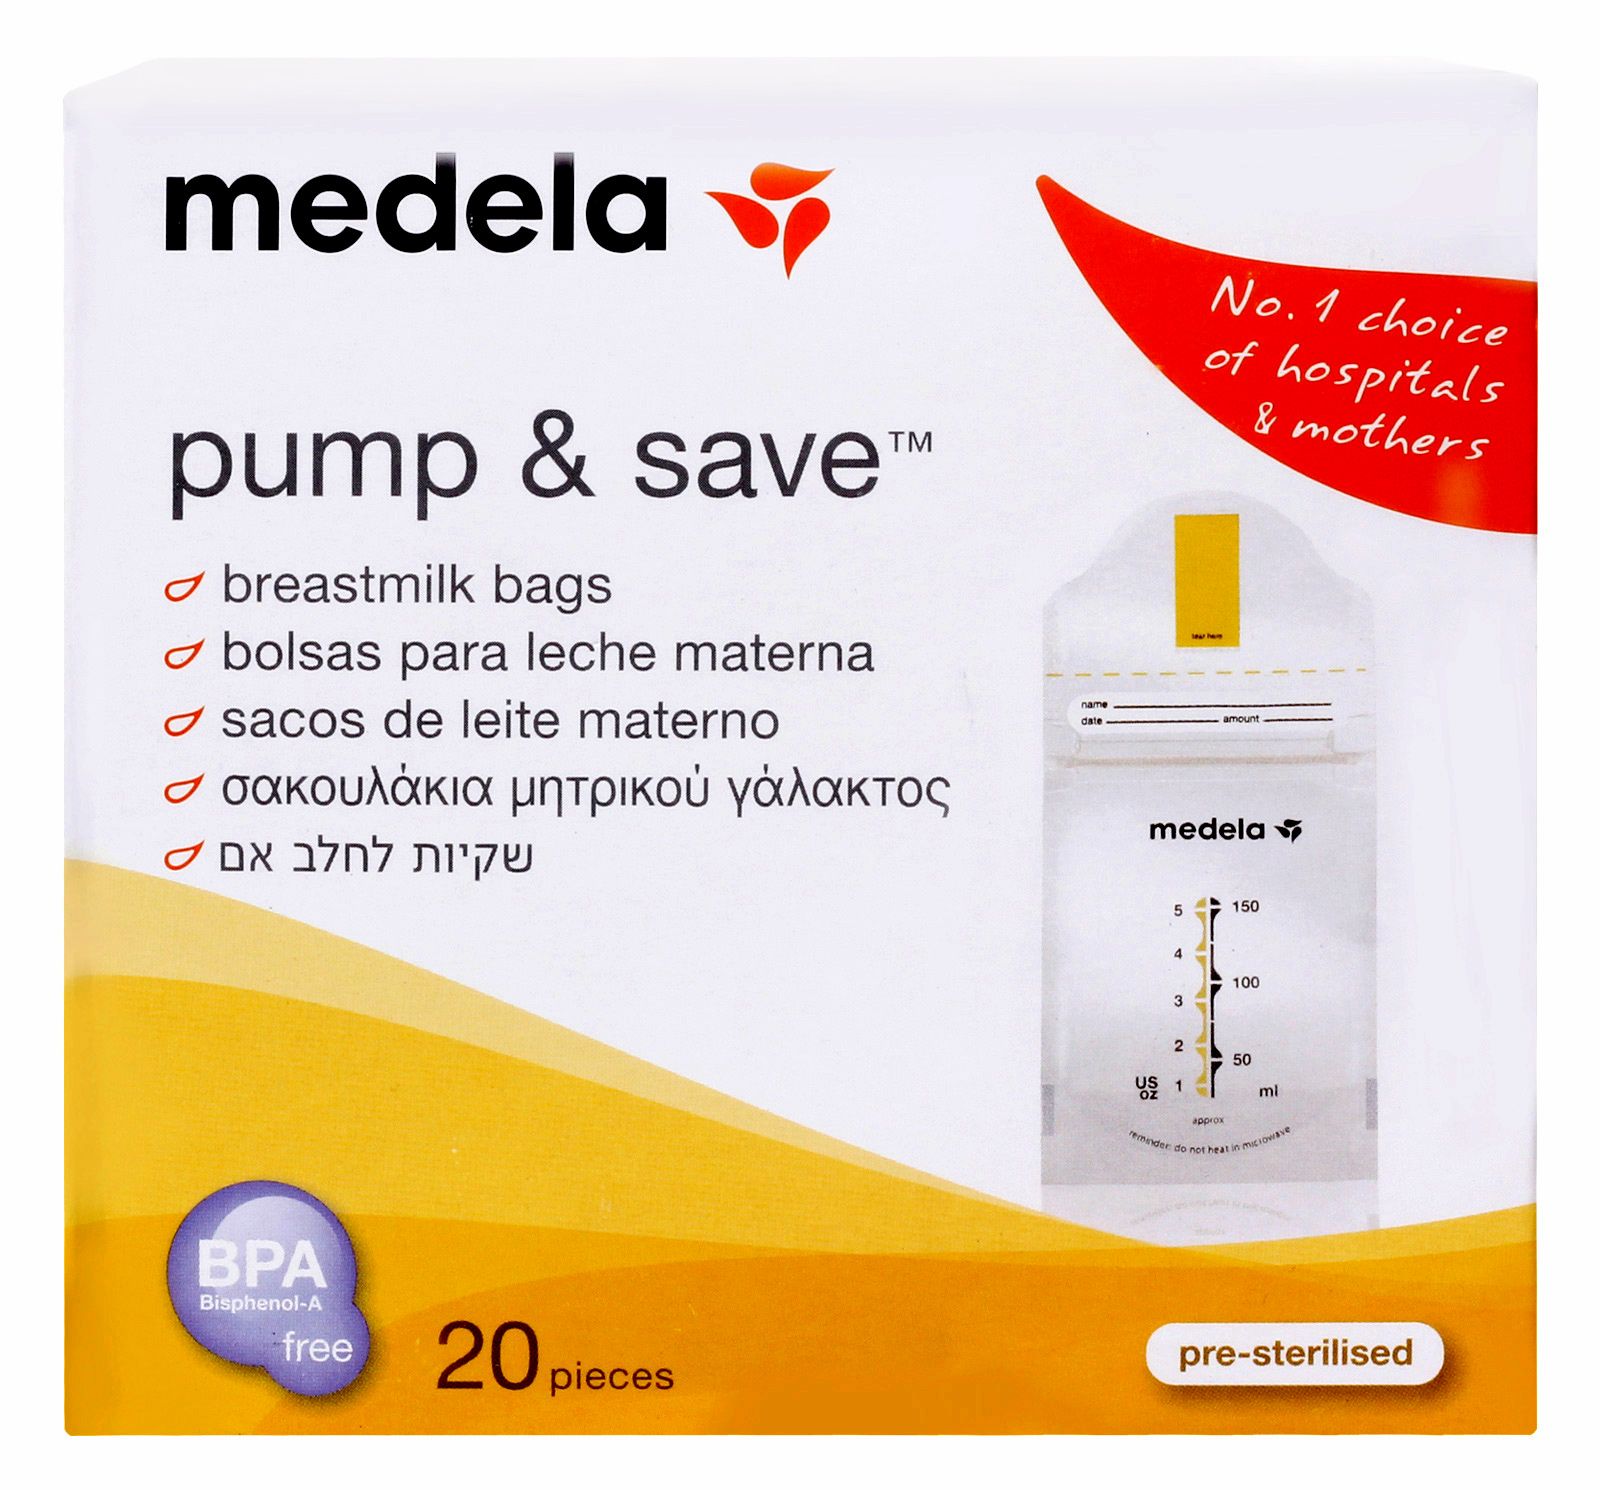 Medela - Pump & Save Breastmilk Bags